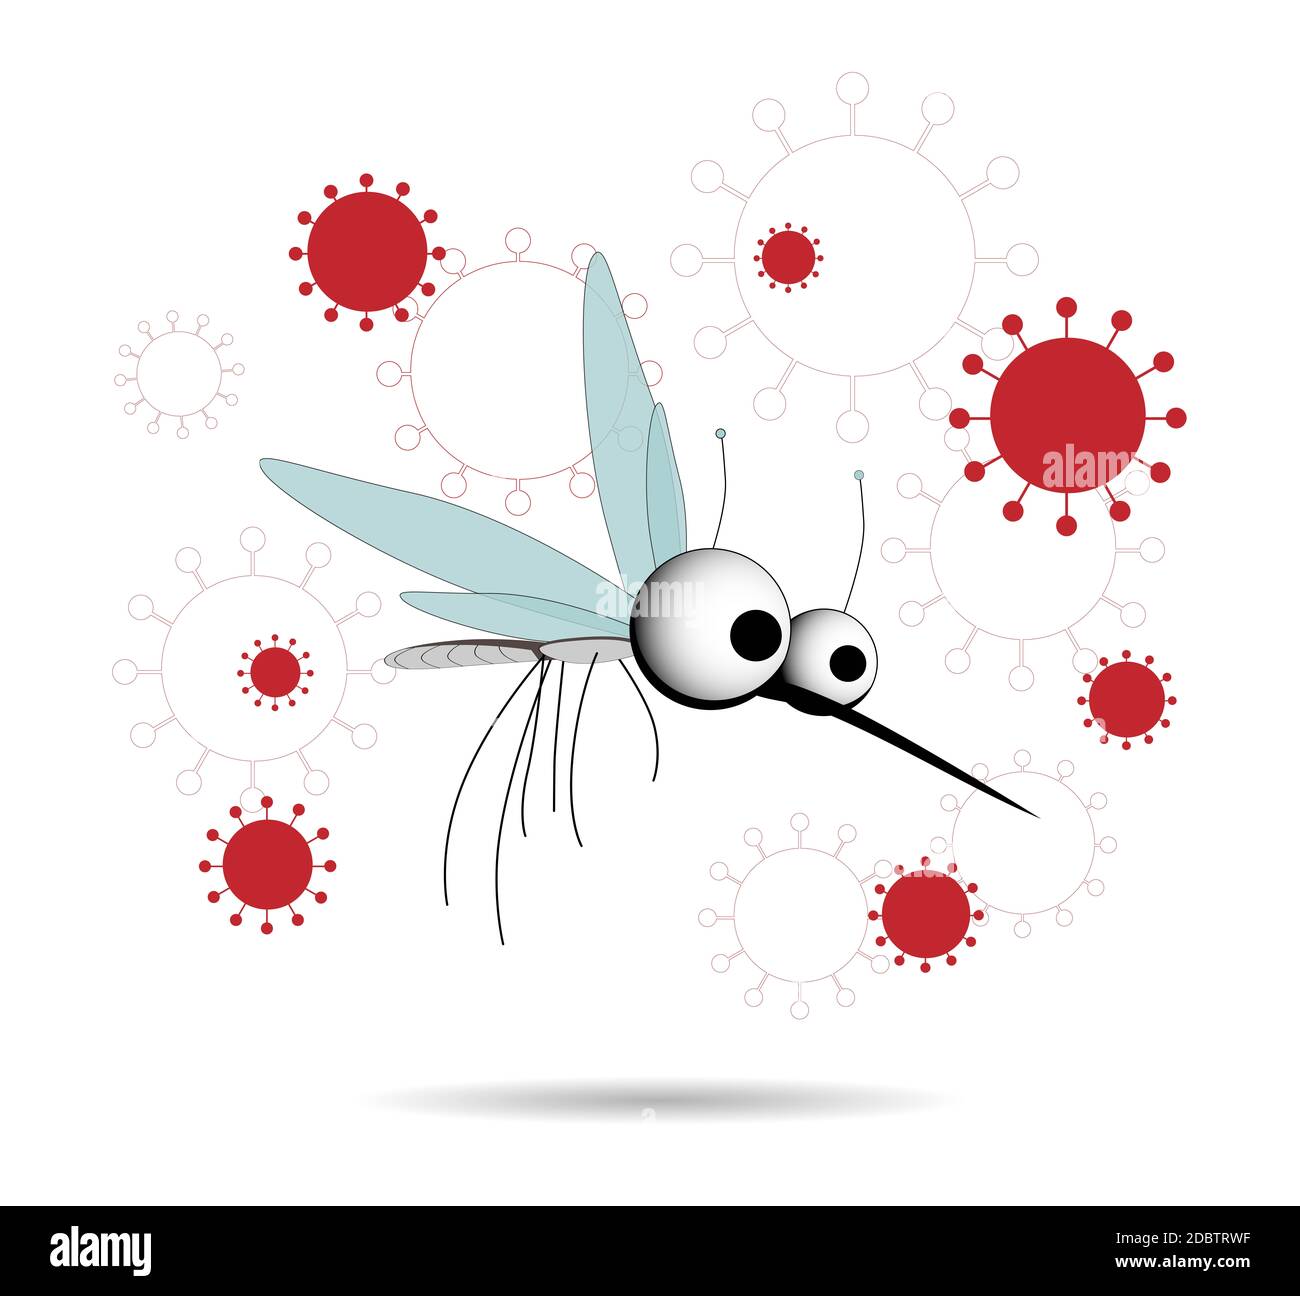 Les moustiques sont porteurs d'infections. Insectes ailés. Illustration de moustique d'insecte, moustique et ravageur pour l'hydrofuge, les pulvérisations et les patchs publicitaires, affiche Banque D'Images